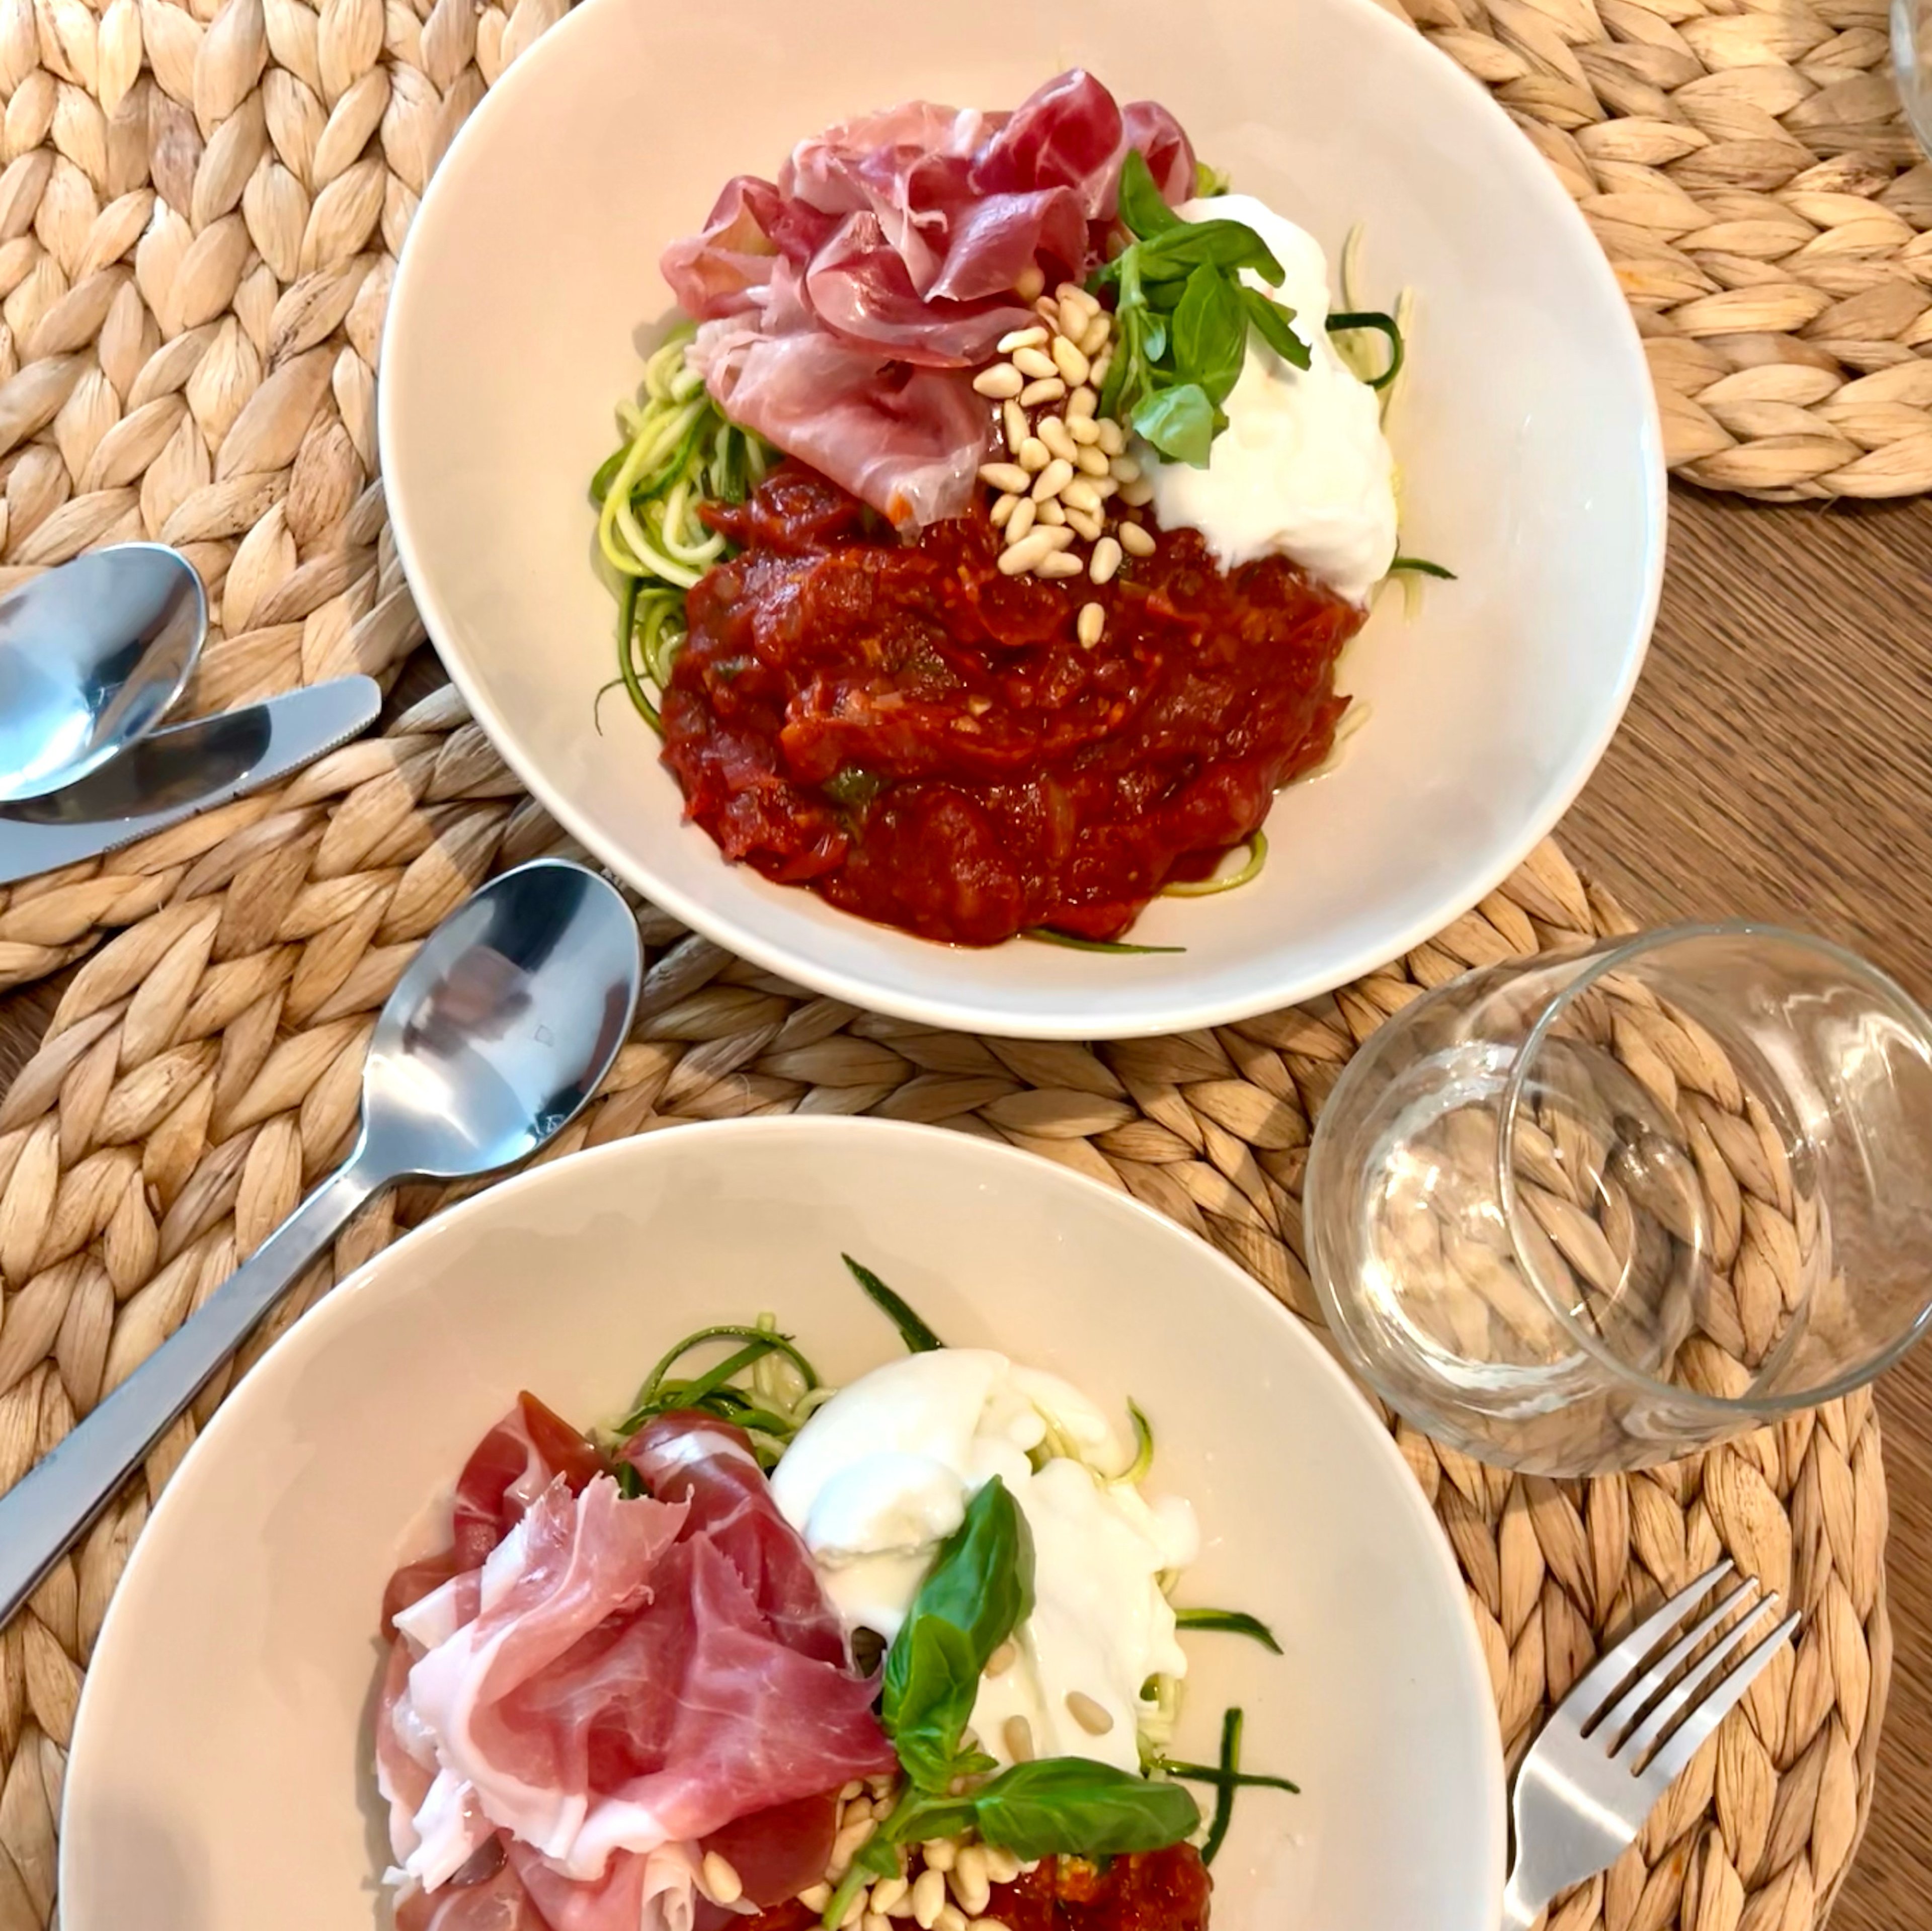 Courgetti with burrata, prosciutto and sundried tomato